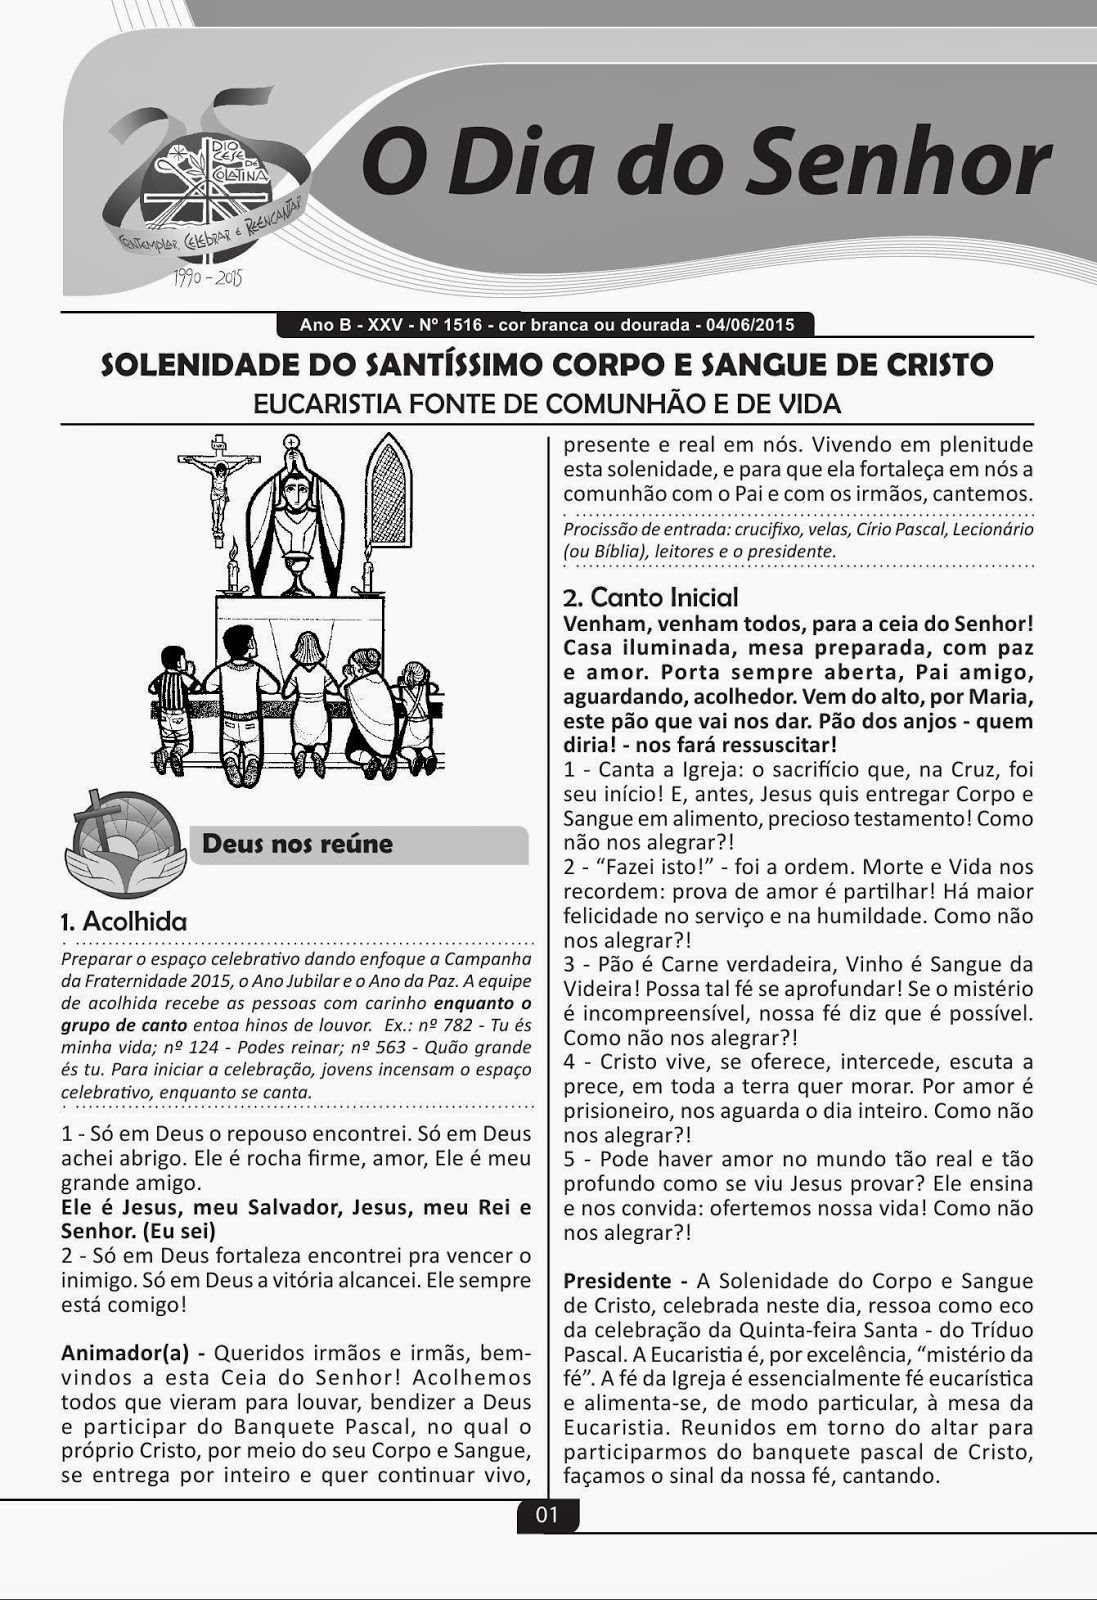 ANIMAÇÃO DE MISSAS - GRUPOS DE CANTOS: 04-06-2015- O DIA DO SENHOR- CORPUS  CHRISTI - CANTOS E PARTITURAS